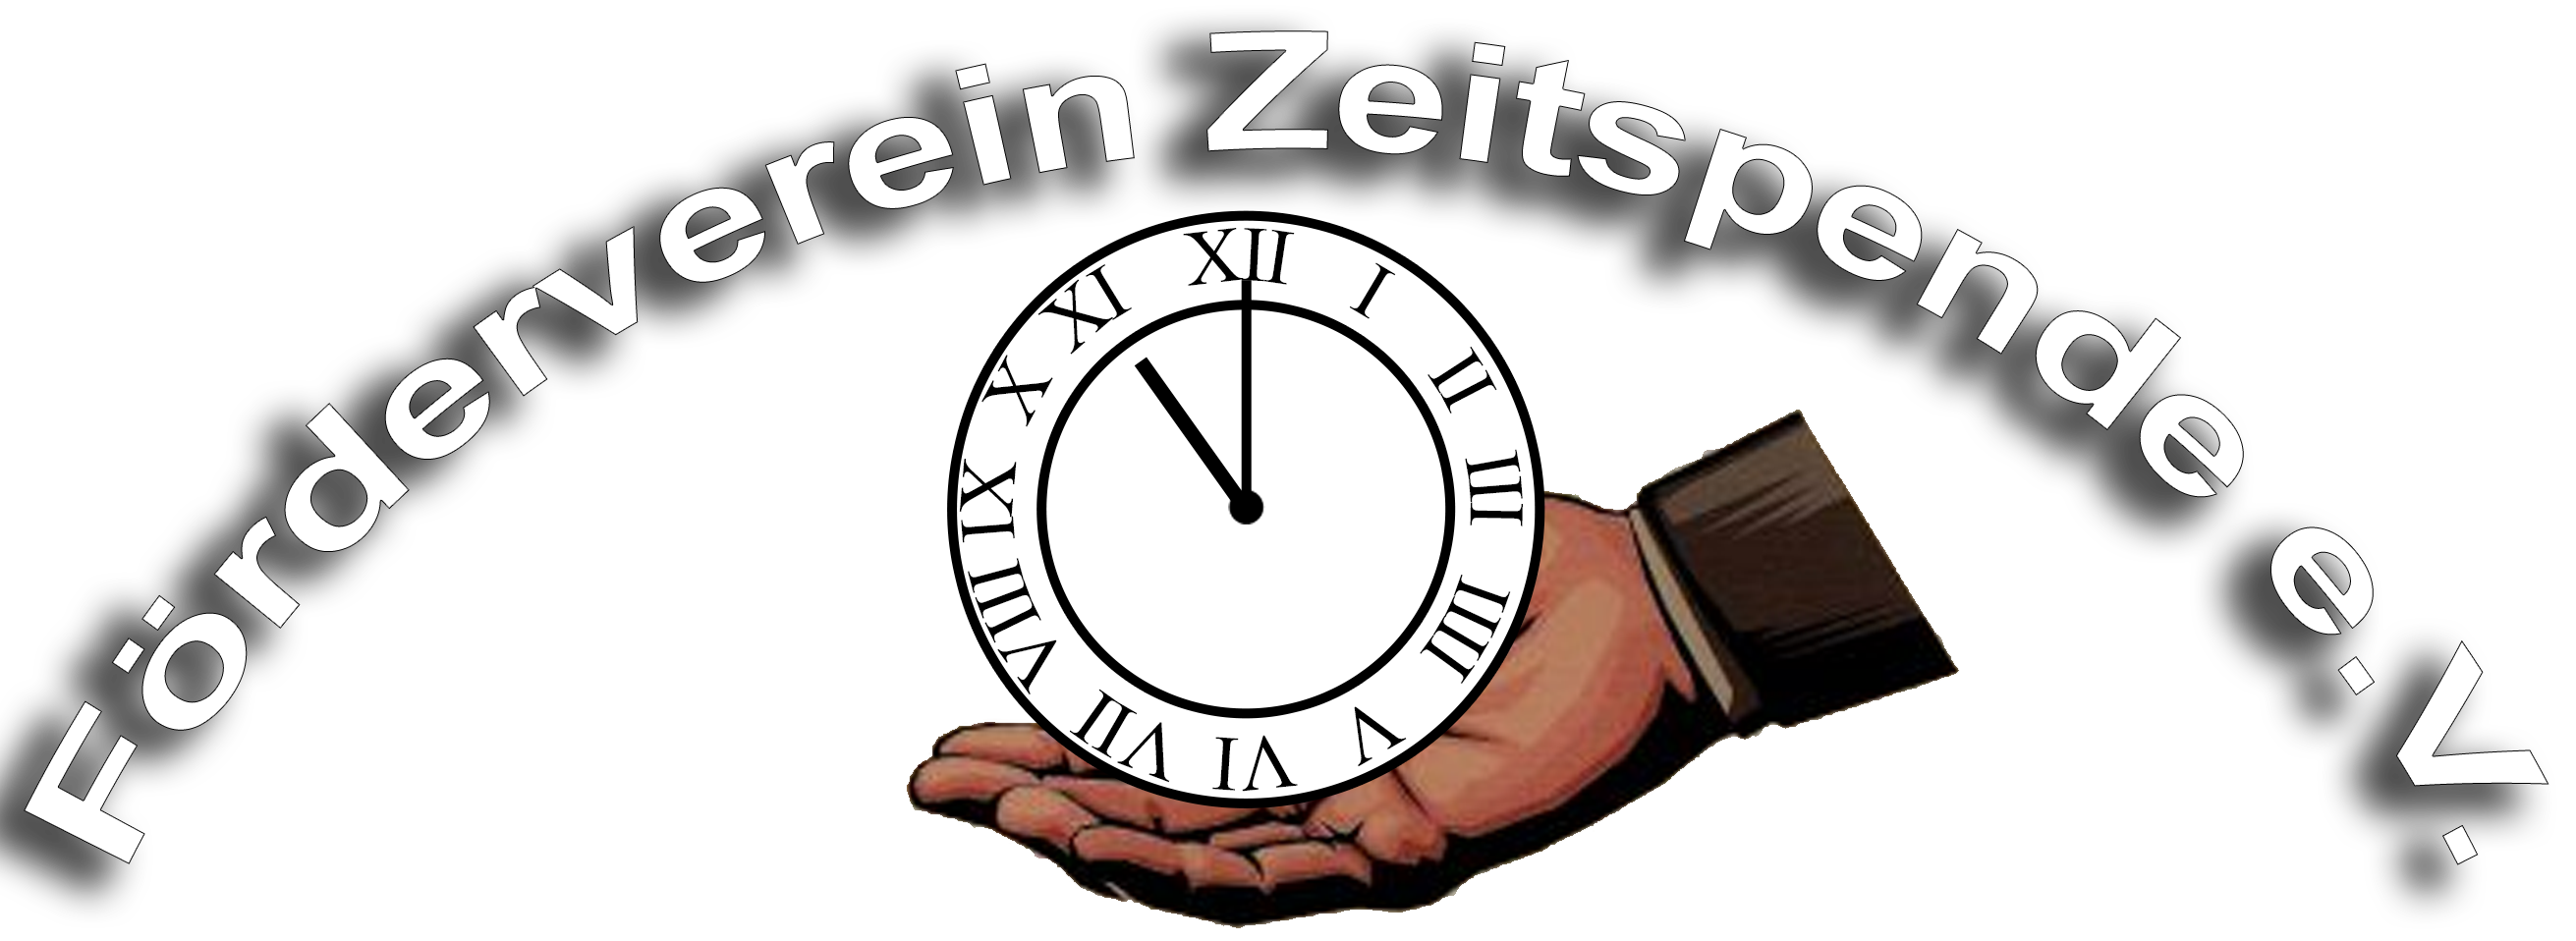 Förderverein Zeitspende e.V. logo